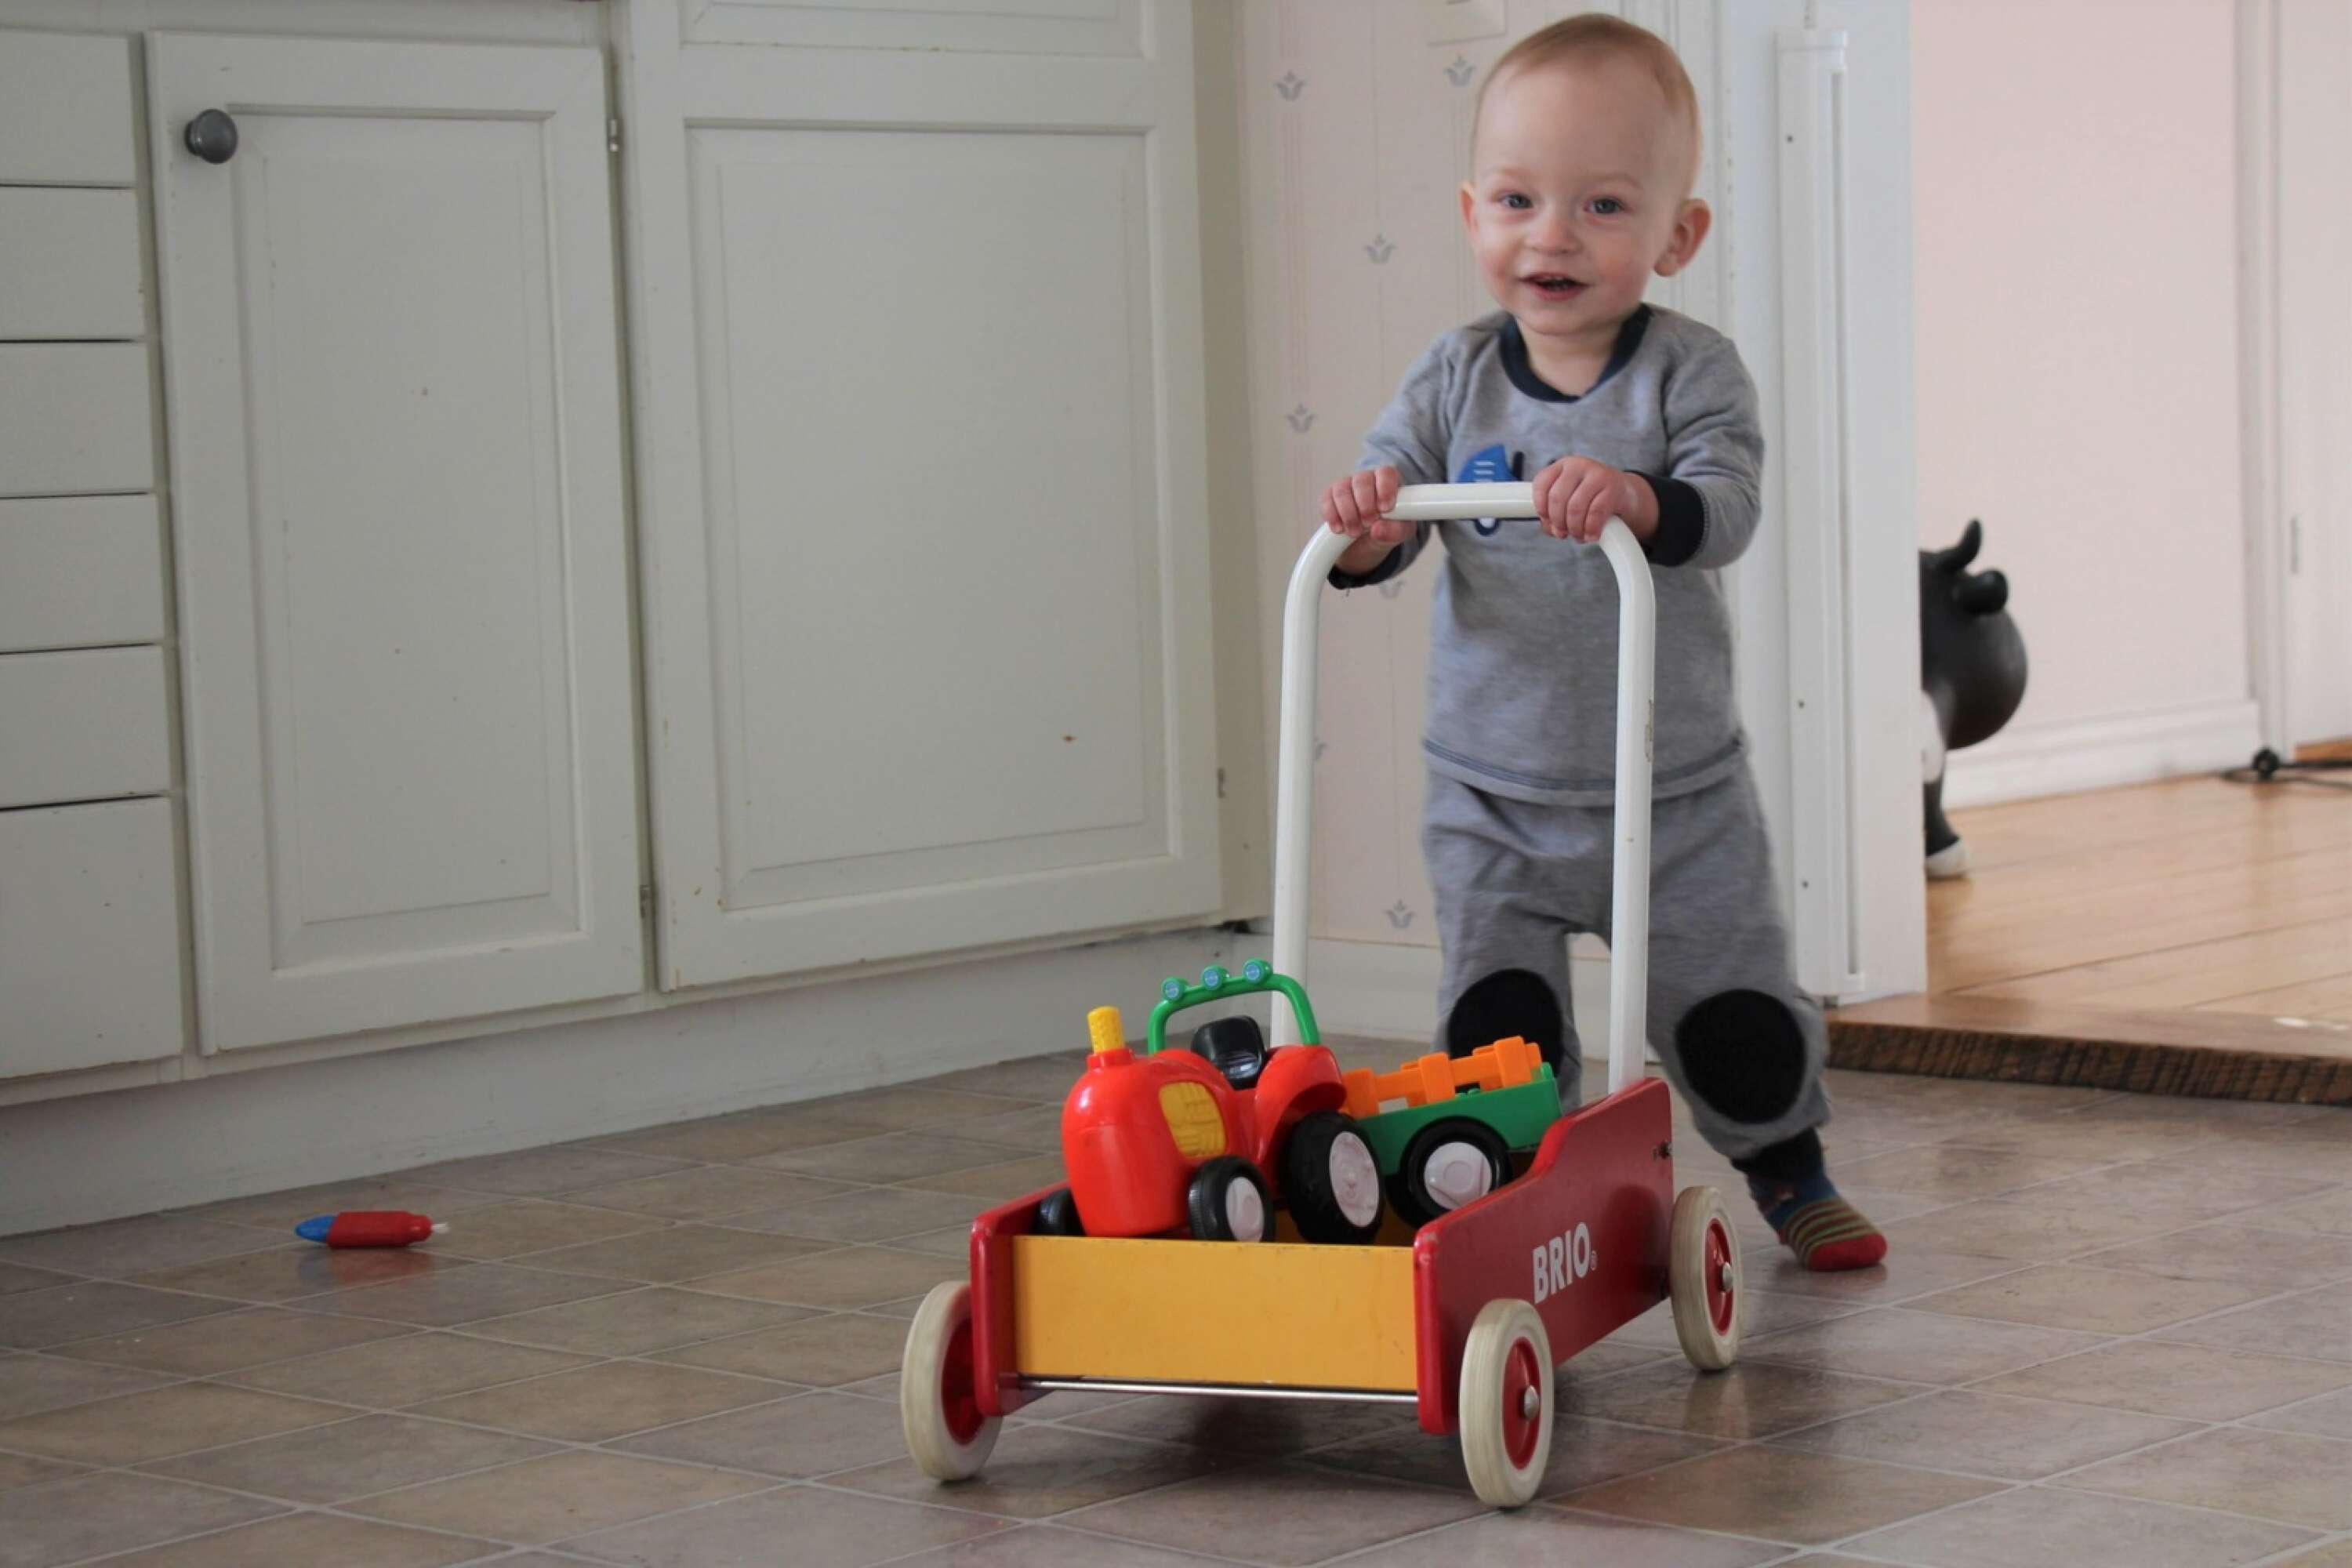 För bara någon vecka sedan firade Matteos familj hans ettårsdag hemma i Lviv, Ukraina. Då var allt som vanligt. Nu får Matteo leka med helt andra leksaker – i ett för honom främmande land.